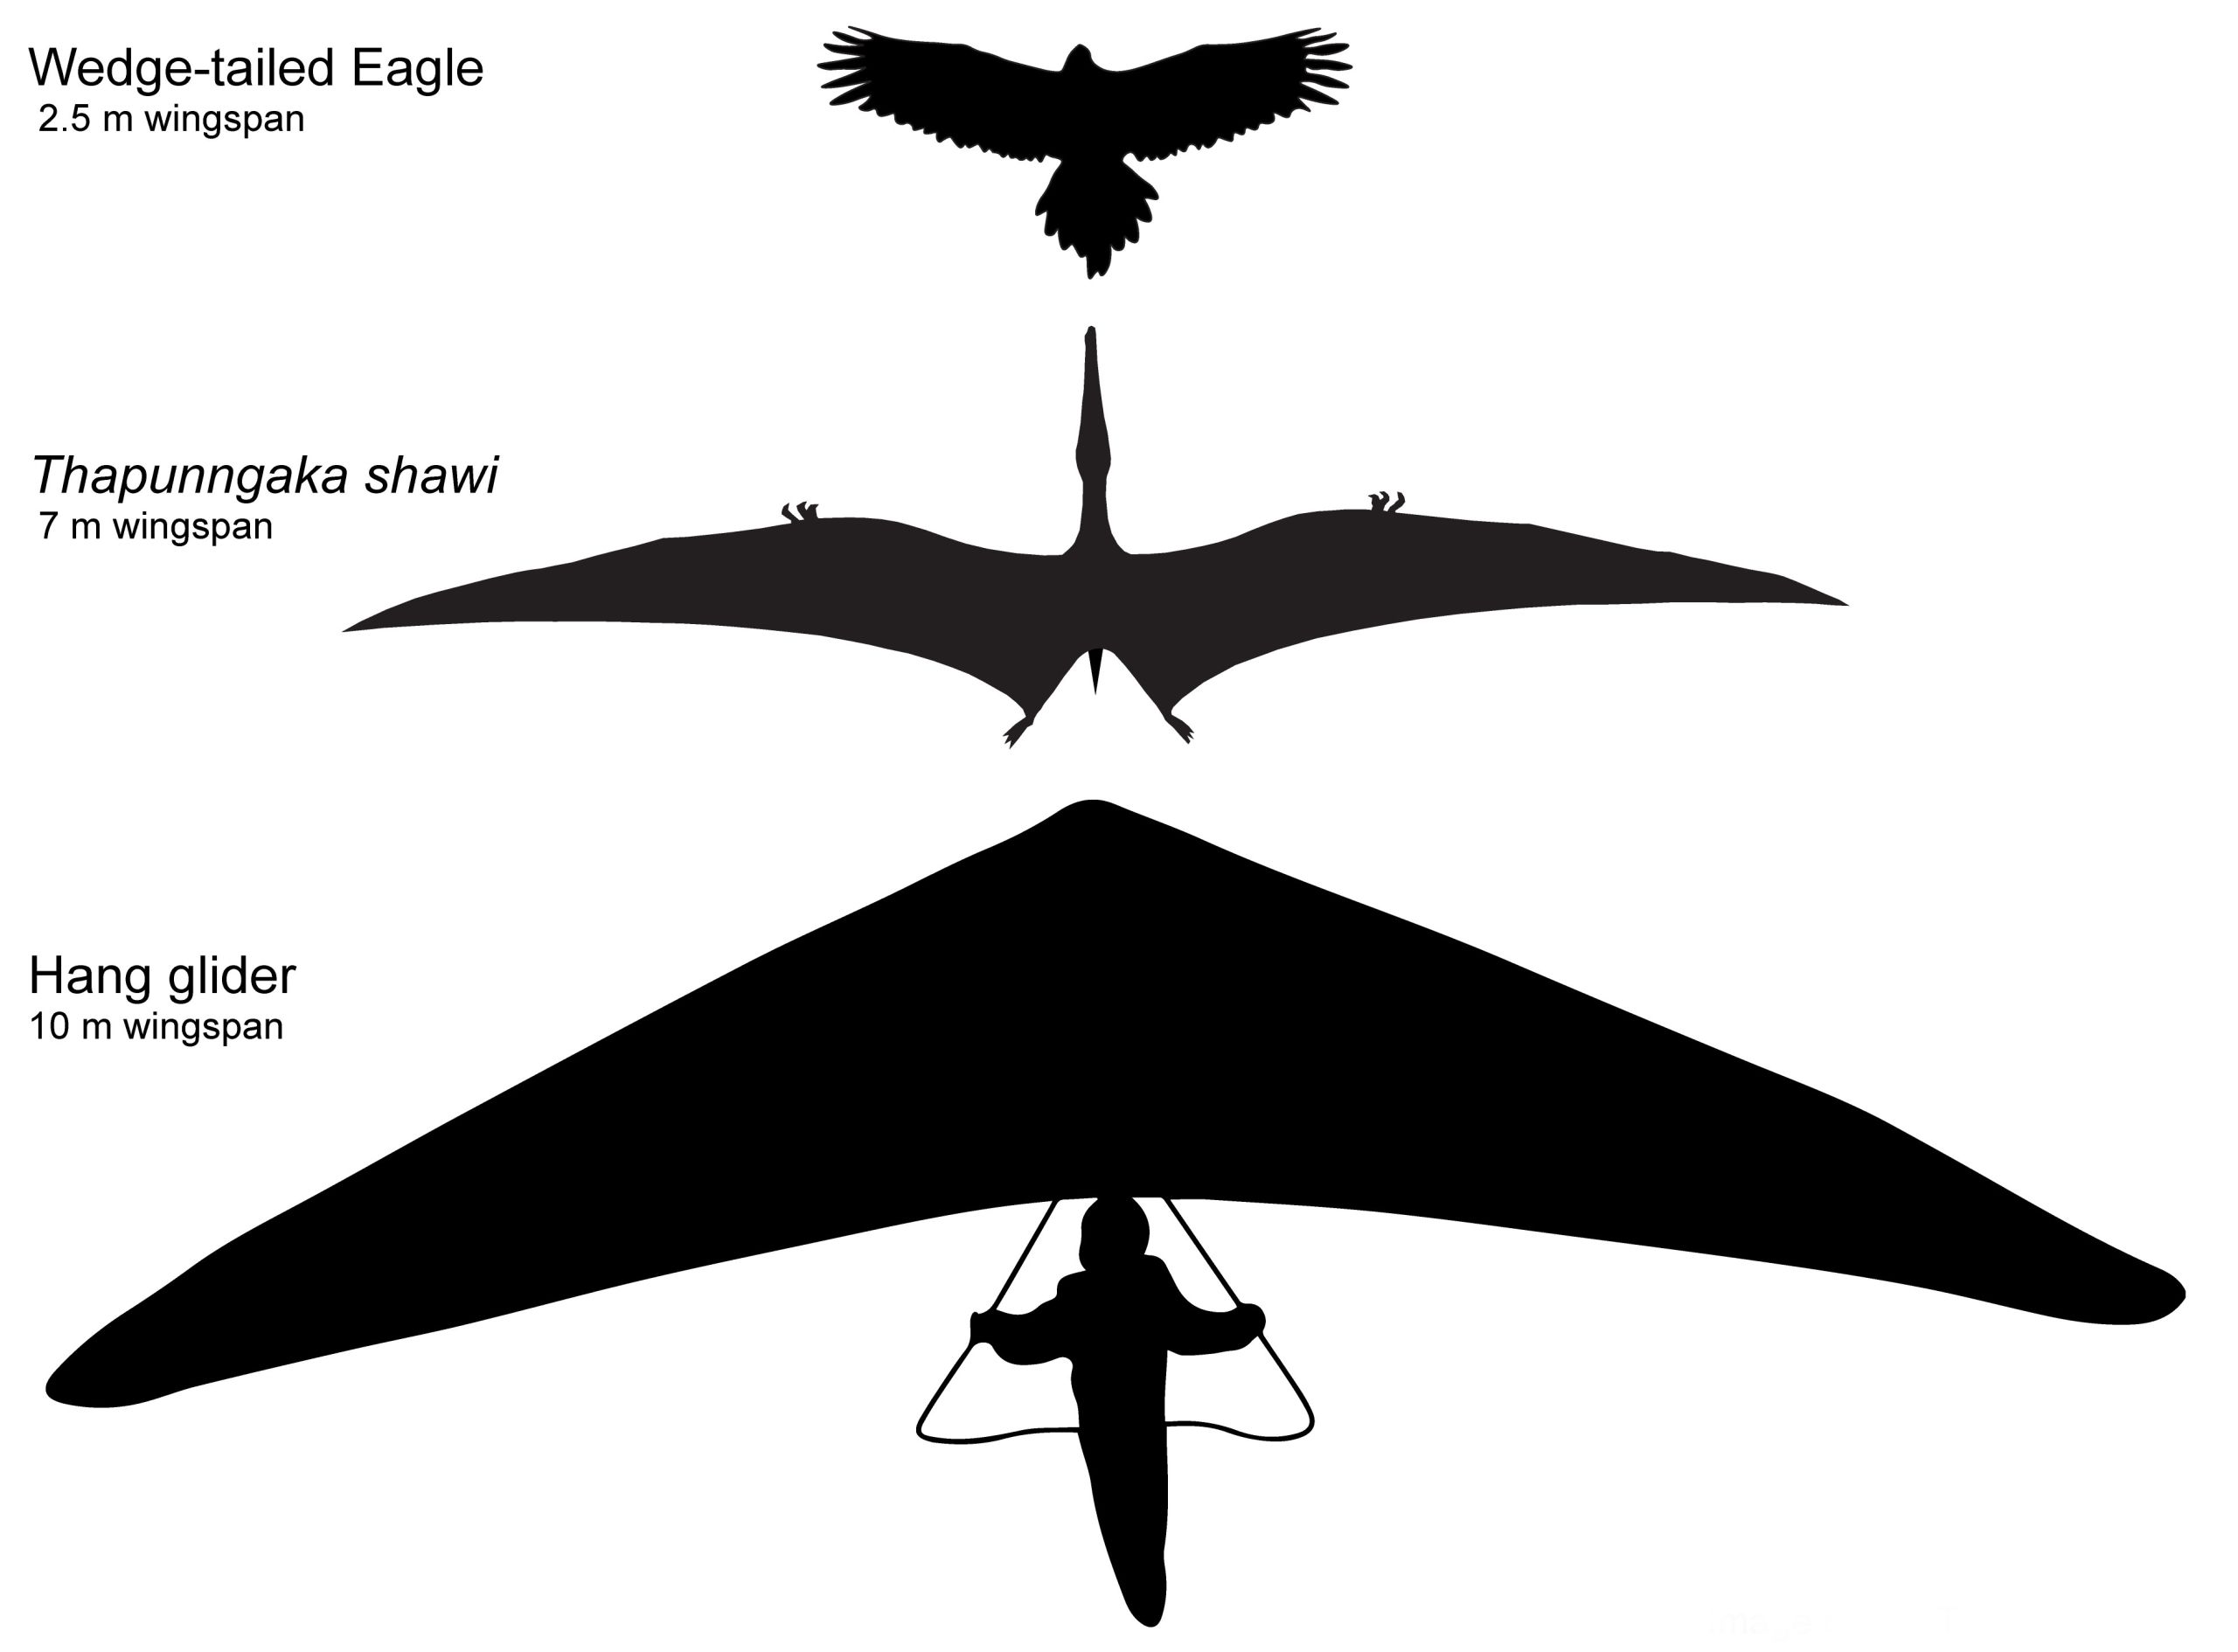 Hypotetisk omrids af Thapunngaka shawi med et 7 m vingefang, sammen med en kilehaleørn (2.5 m vingefang) og en drageflyver (10 m 'vingefang'). Tim Richards